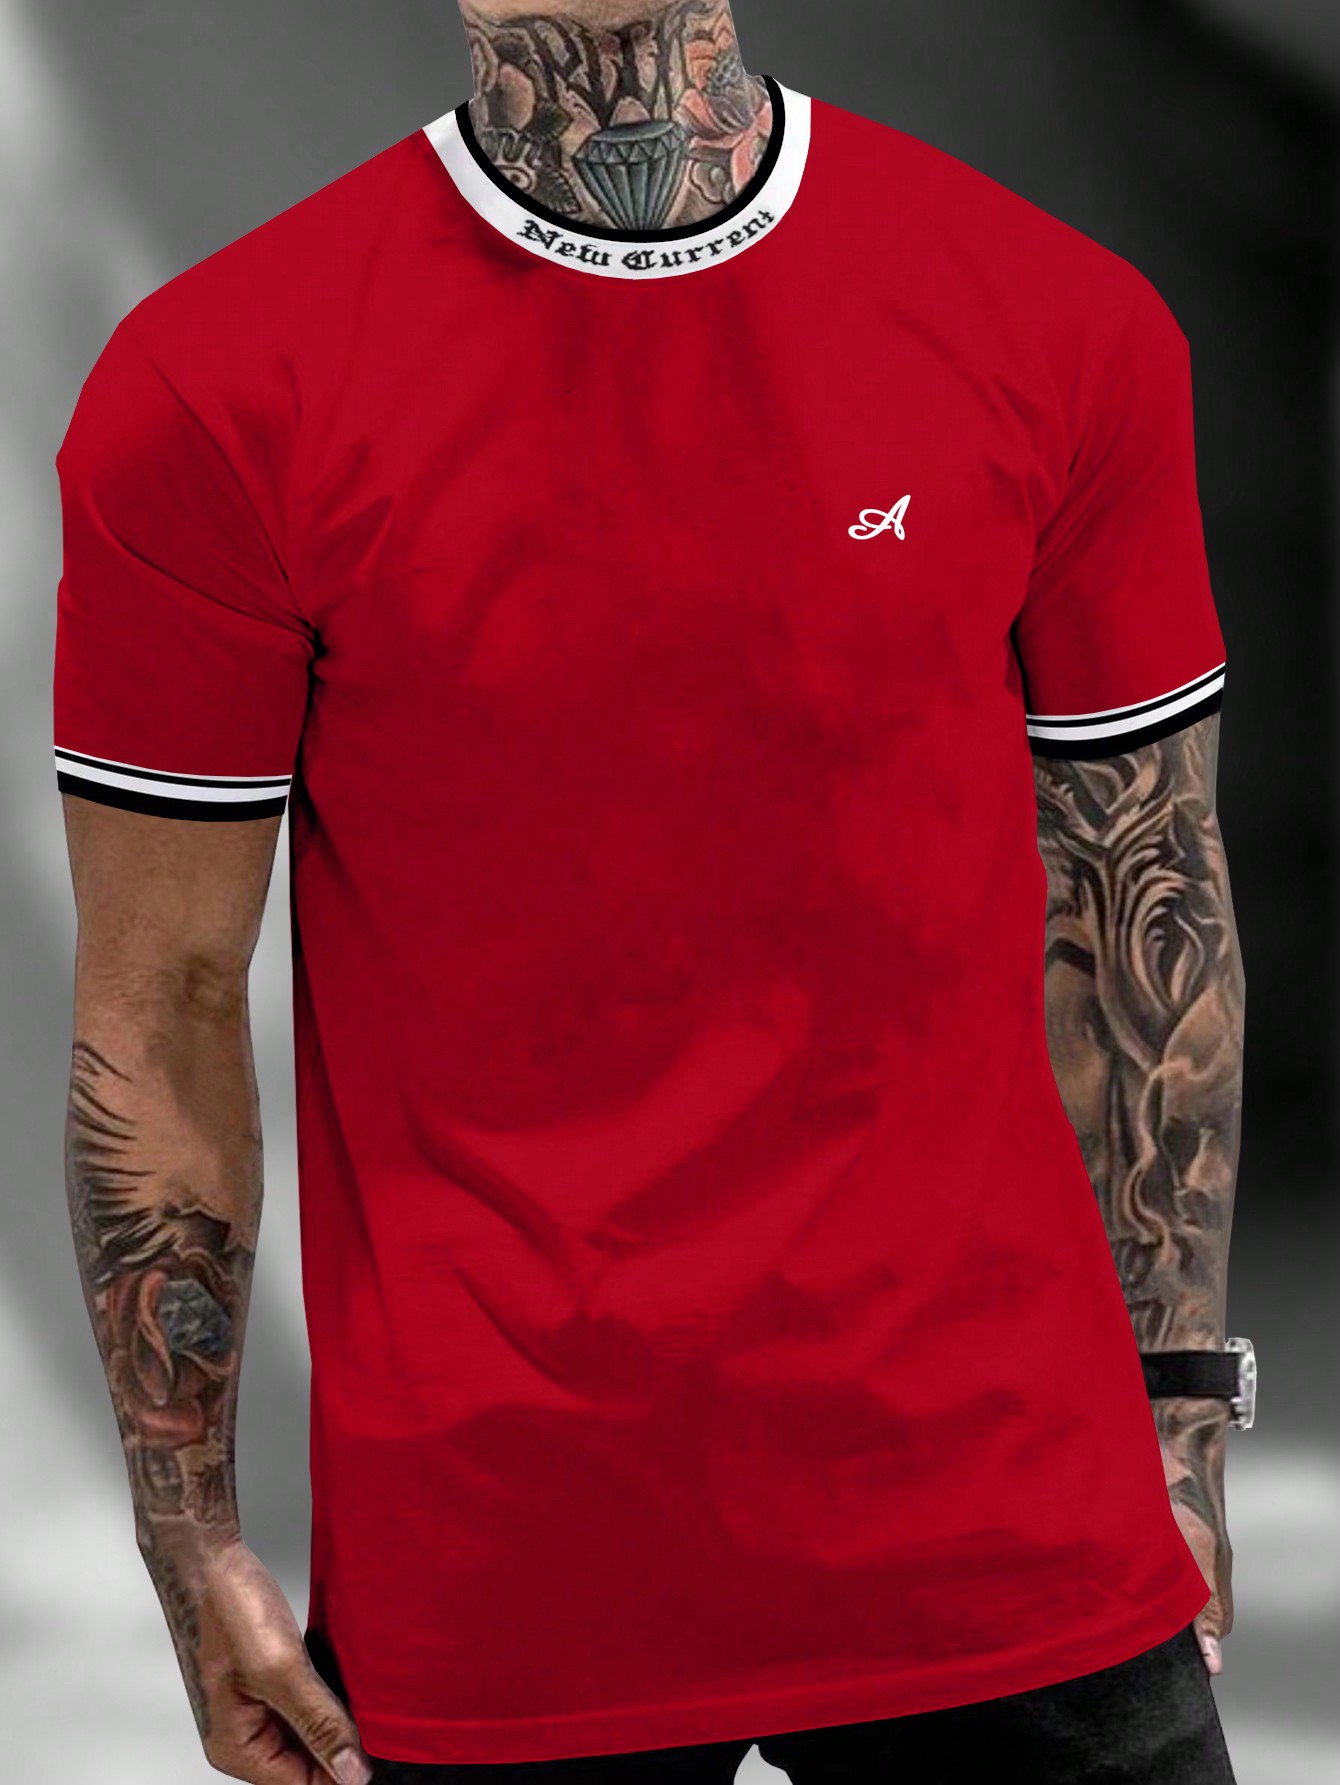 Мужская футболка с контрастным буквенным принтом Manfinity Homme и декоративной окантовкой, красный футболка мужская с контрастной отделкой madison 170 насыщенный зеленый белый размер xl